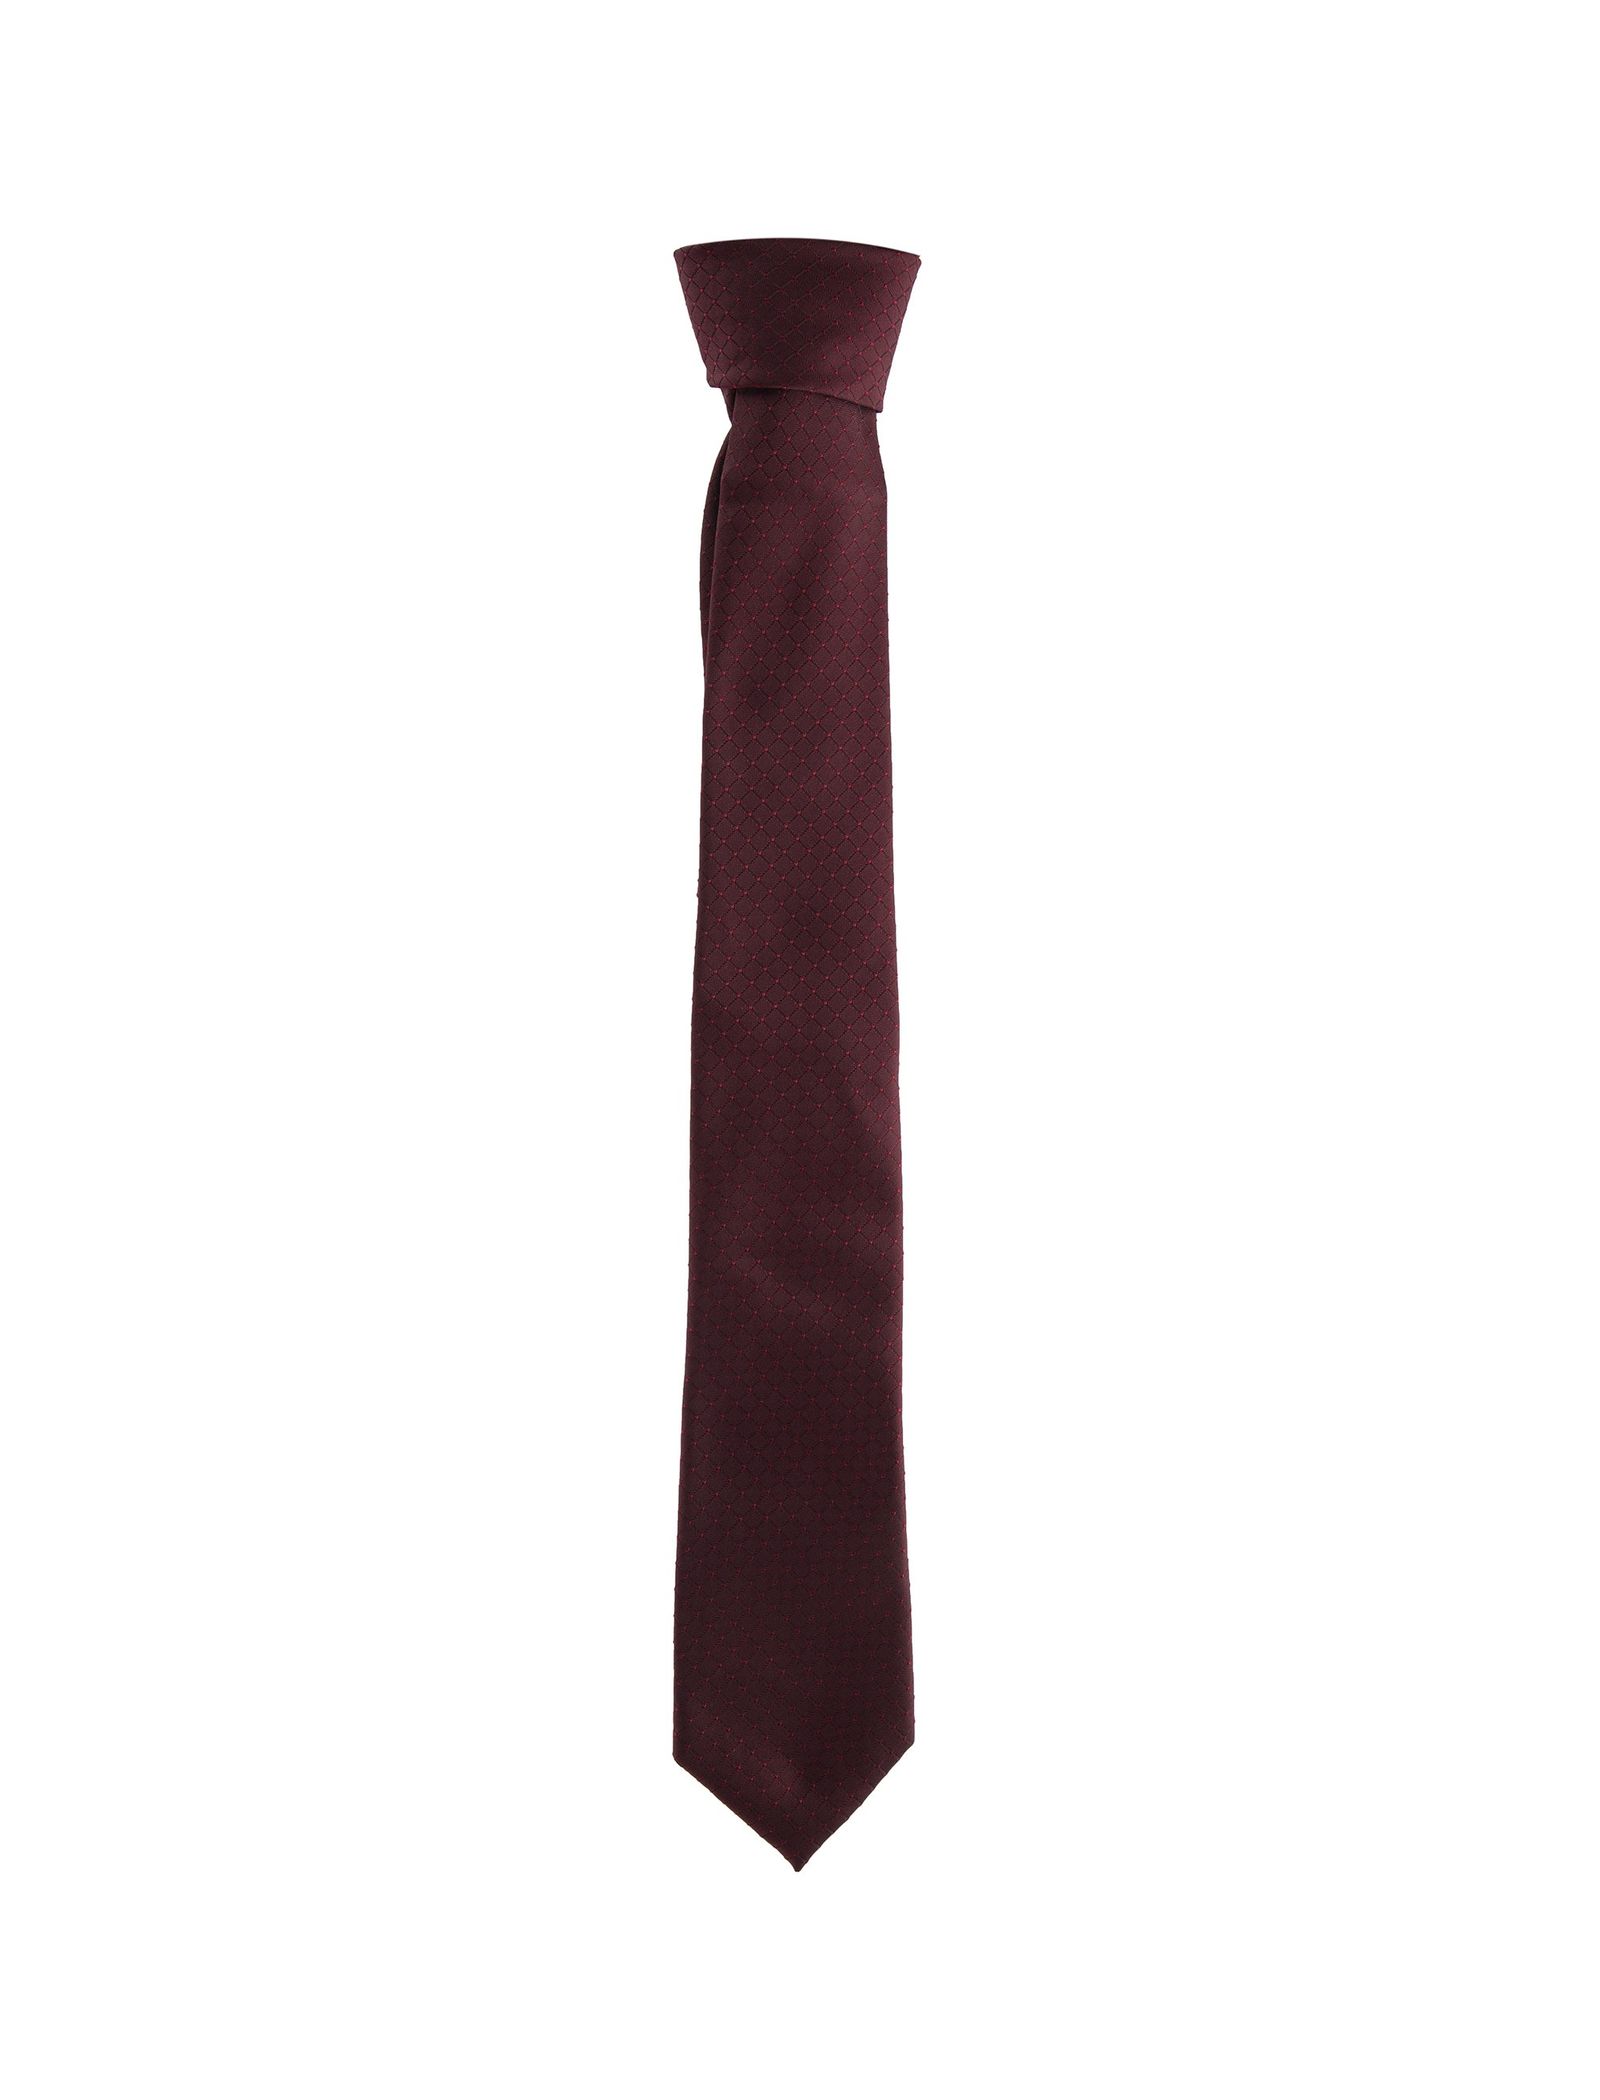 کراوات طرح دار مردانه - یوپیم - قرمز - 2